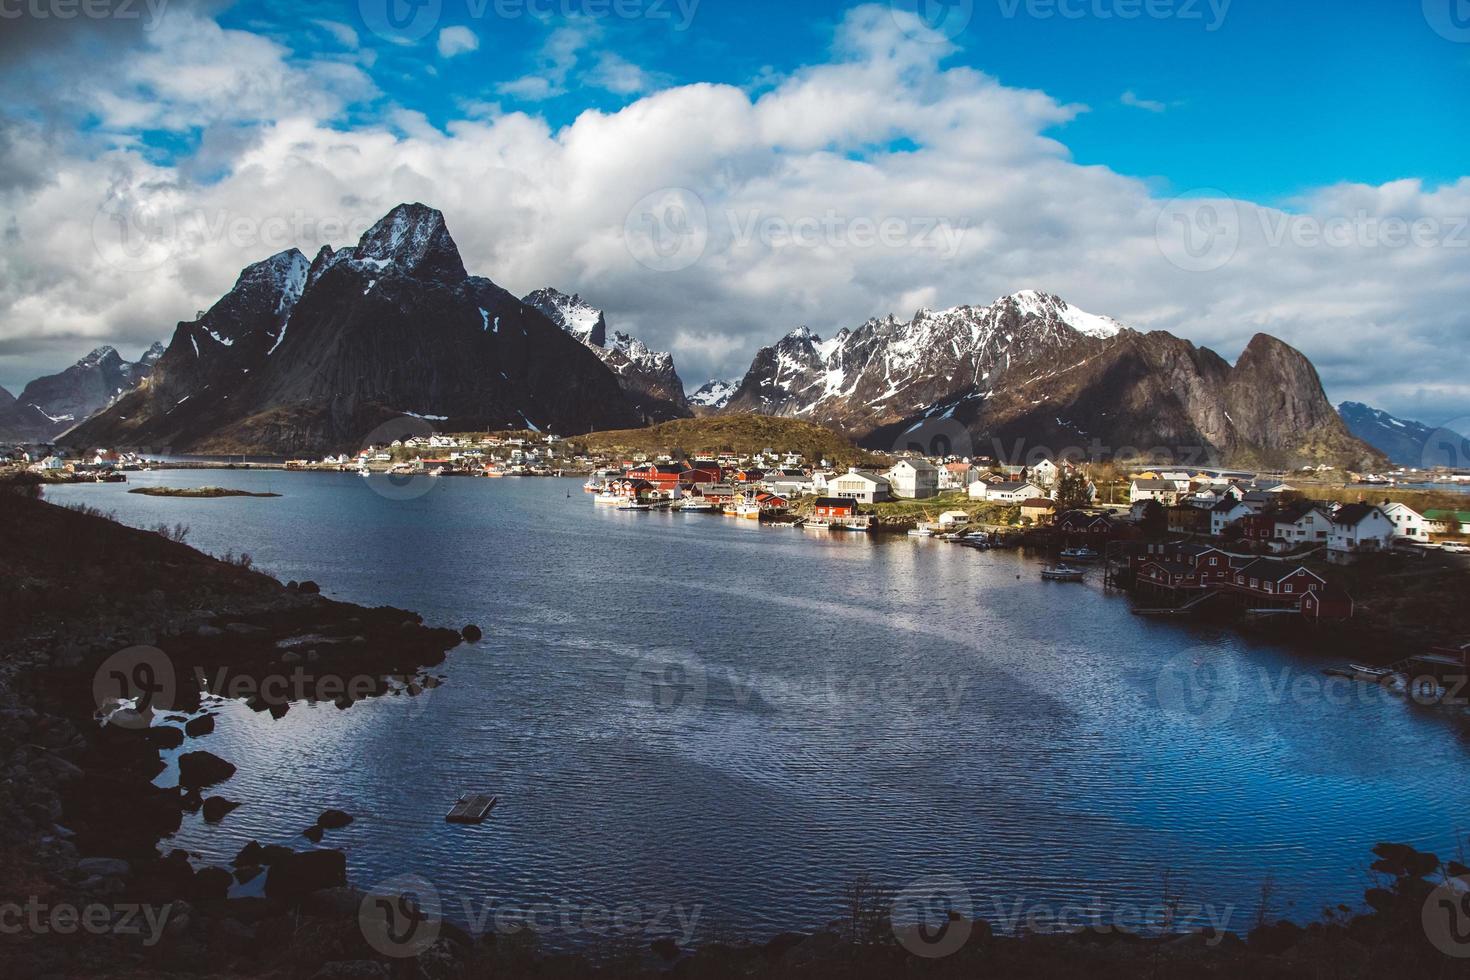 noorwegen rorbu huizen en bergen rotsen over fjord landschap scandinavische reizen bekijken lofoten eilanden. natuurlijk scandinavisch landschap foto